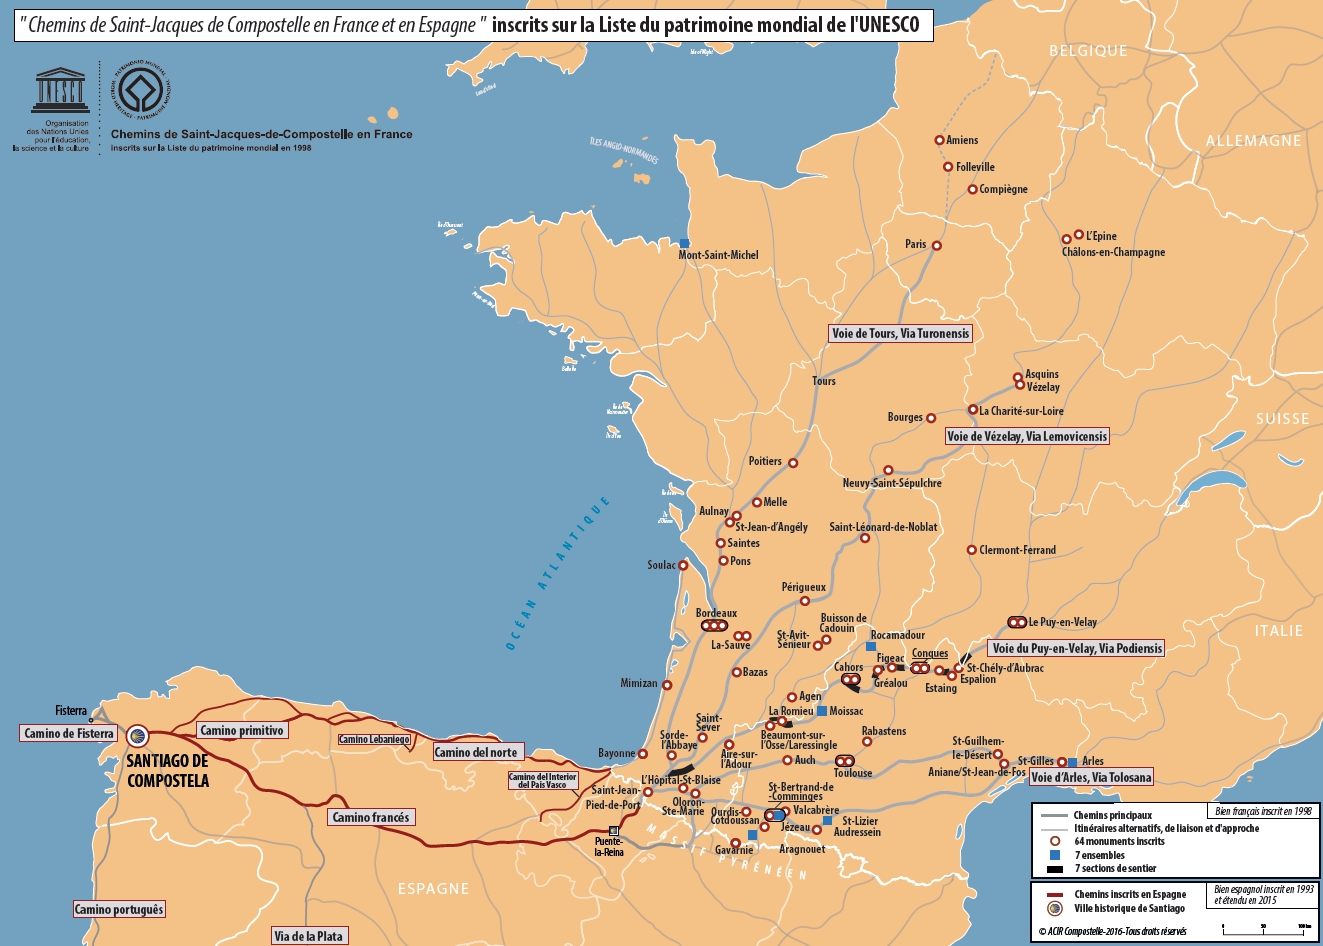 Carte  des chemins de Saint-Jacques-de-Compostelle en France et en Espagne, inscrits sur la liste du patrimoine mondial.